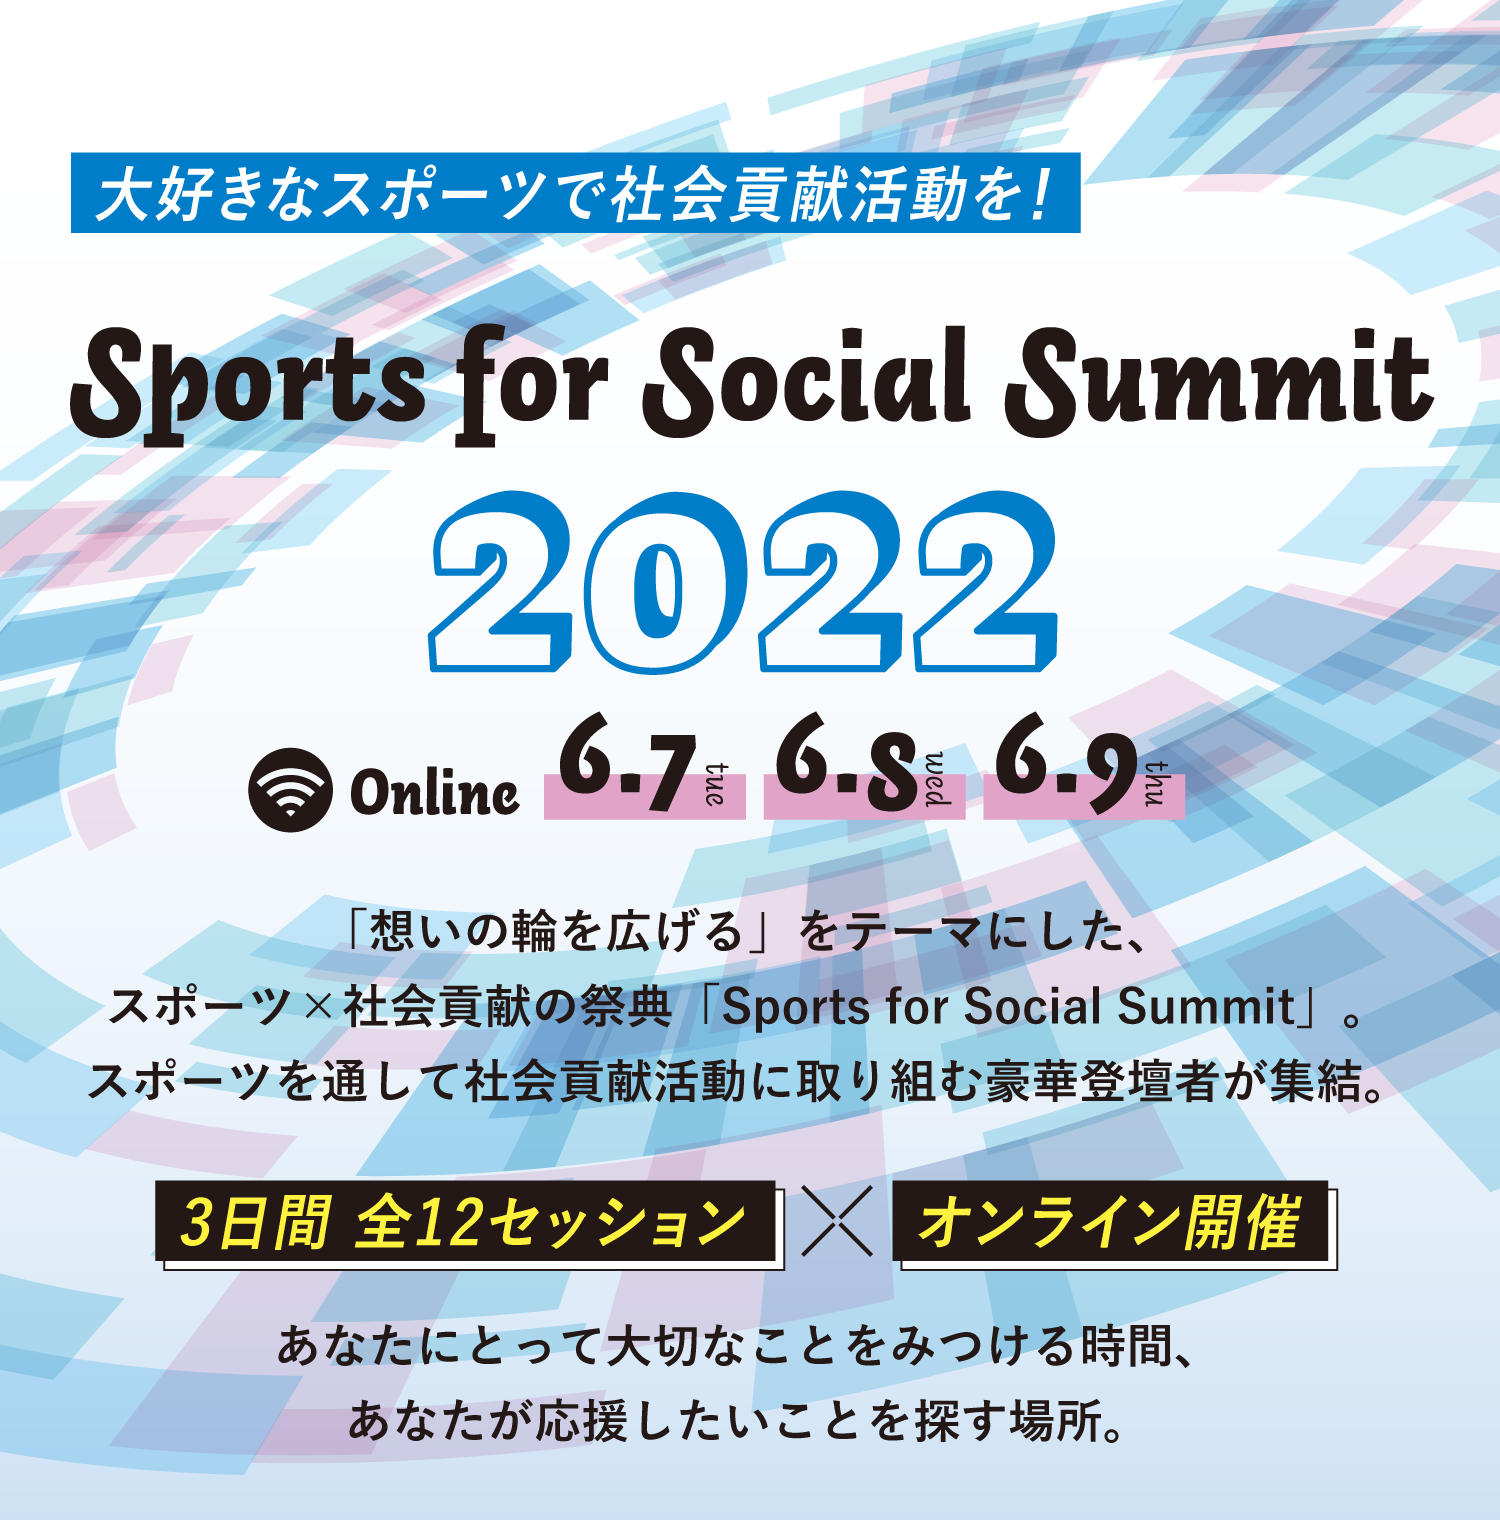 大好きなスポーツで社会貢献活動を！Sports for Social Summit2022